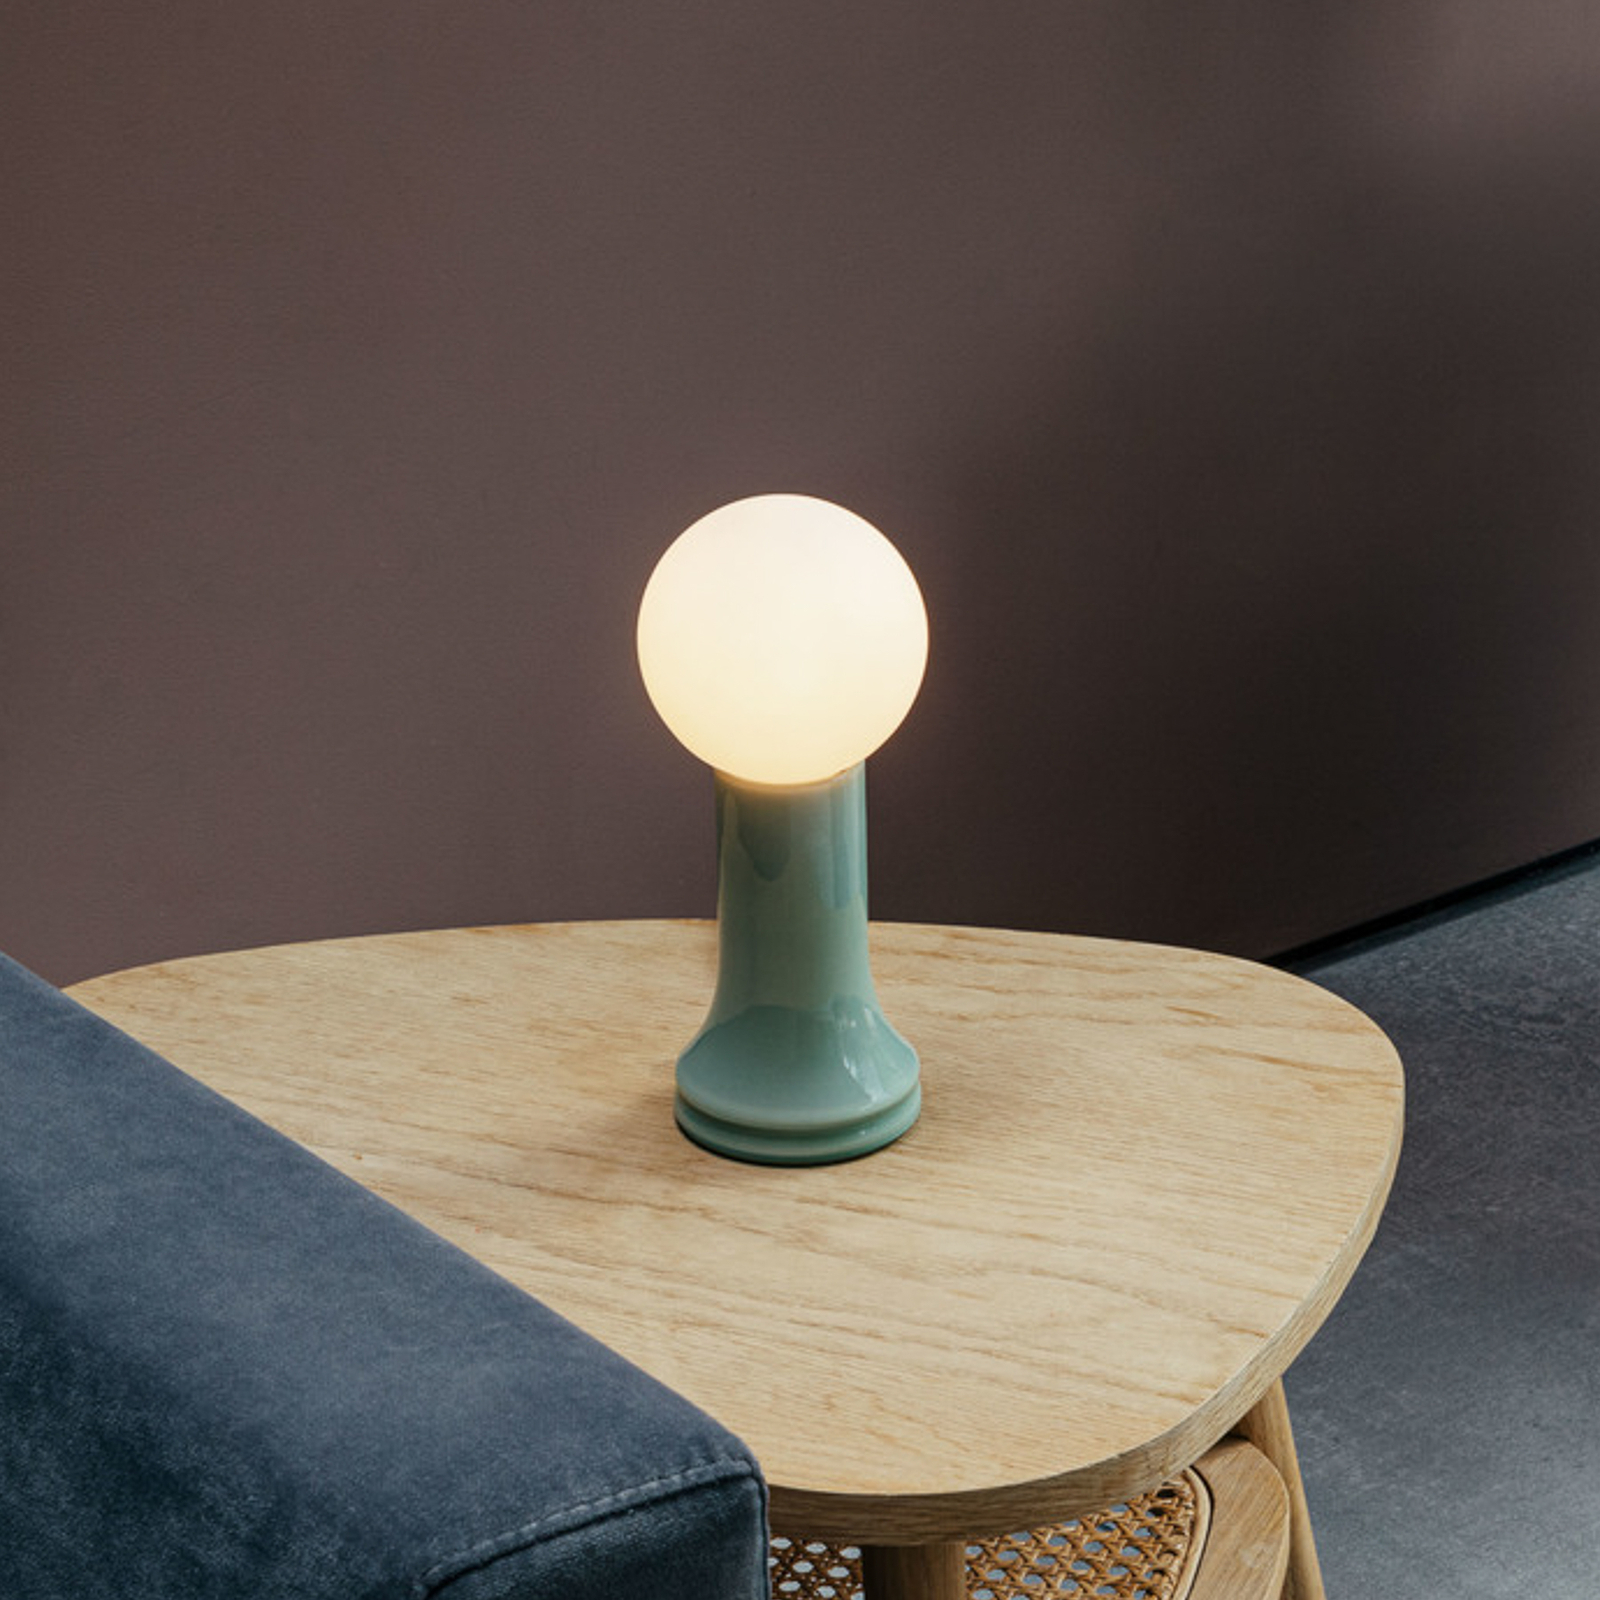 Tala bordlampe Shore, glass, E27 LED-lampe Globe, grønn